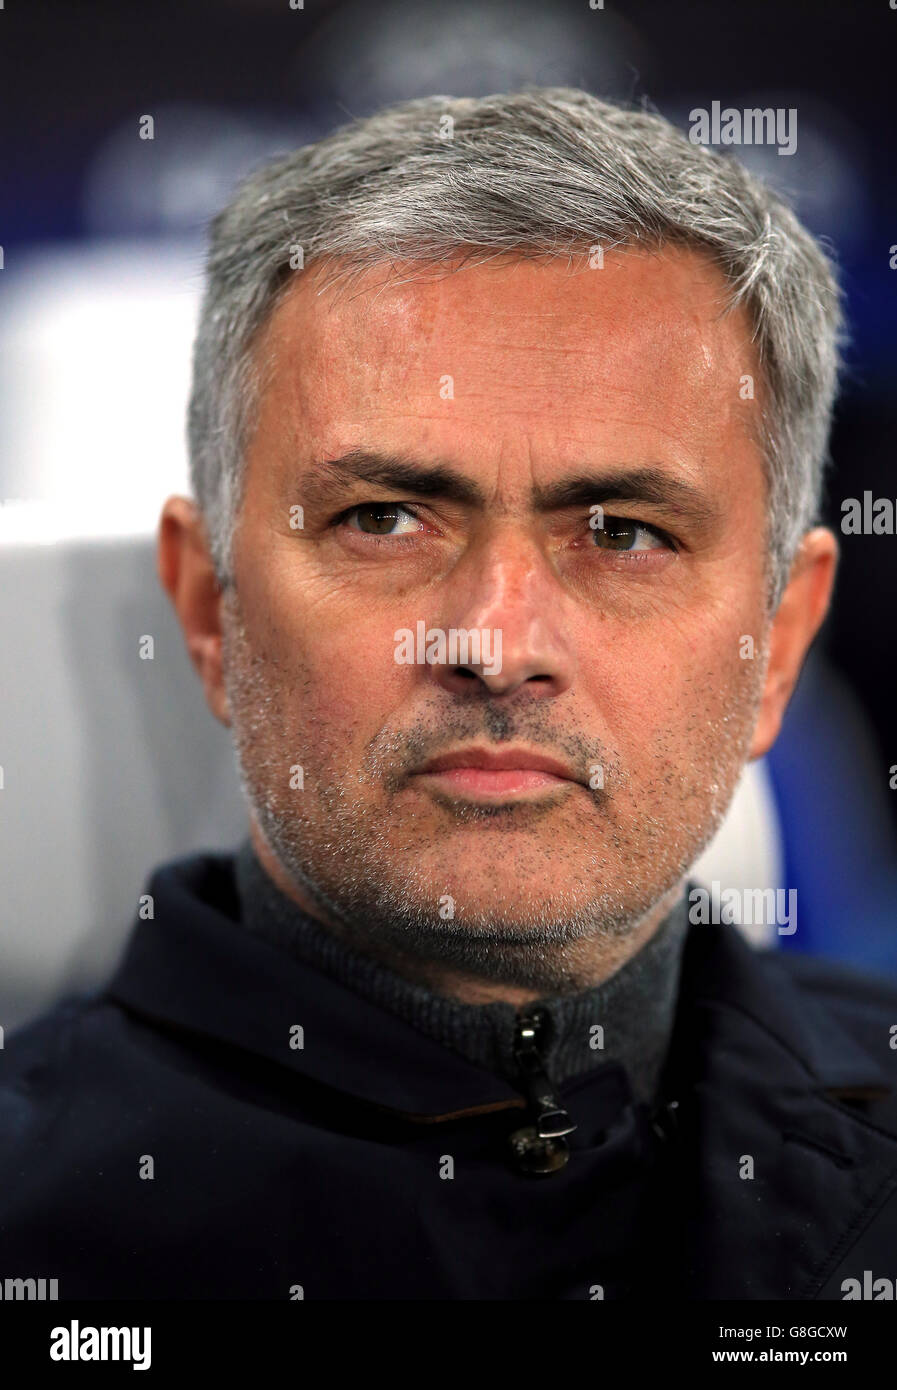 Jose Mourinho, le Manager de Chelsea, lors du match de la Ligue des champions de l'UEFA à Stamford Bridge, Londres. Banque D'Images